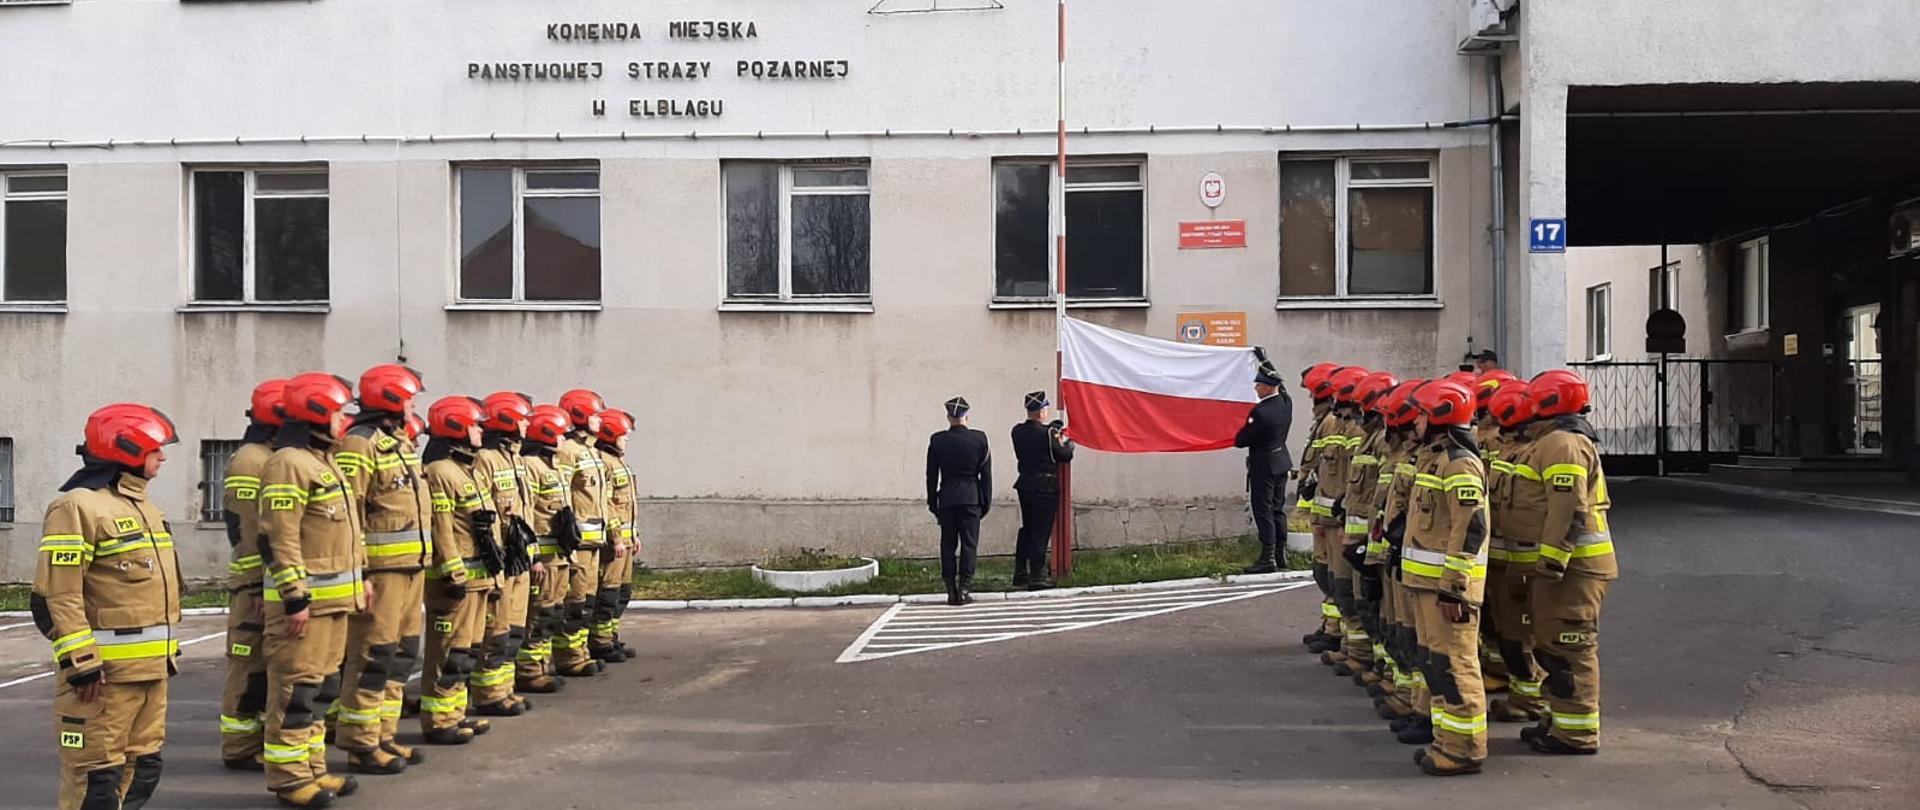 Poczet flagowy prezentuje flagę państwową. Po obu stronach stoją w szeregu strażacy.